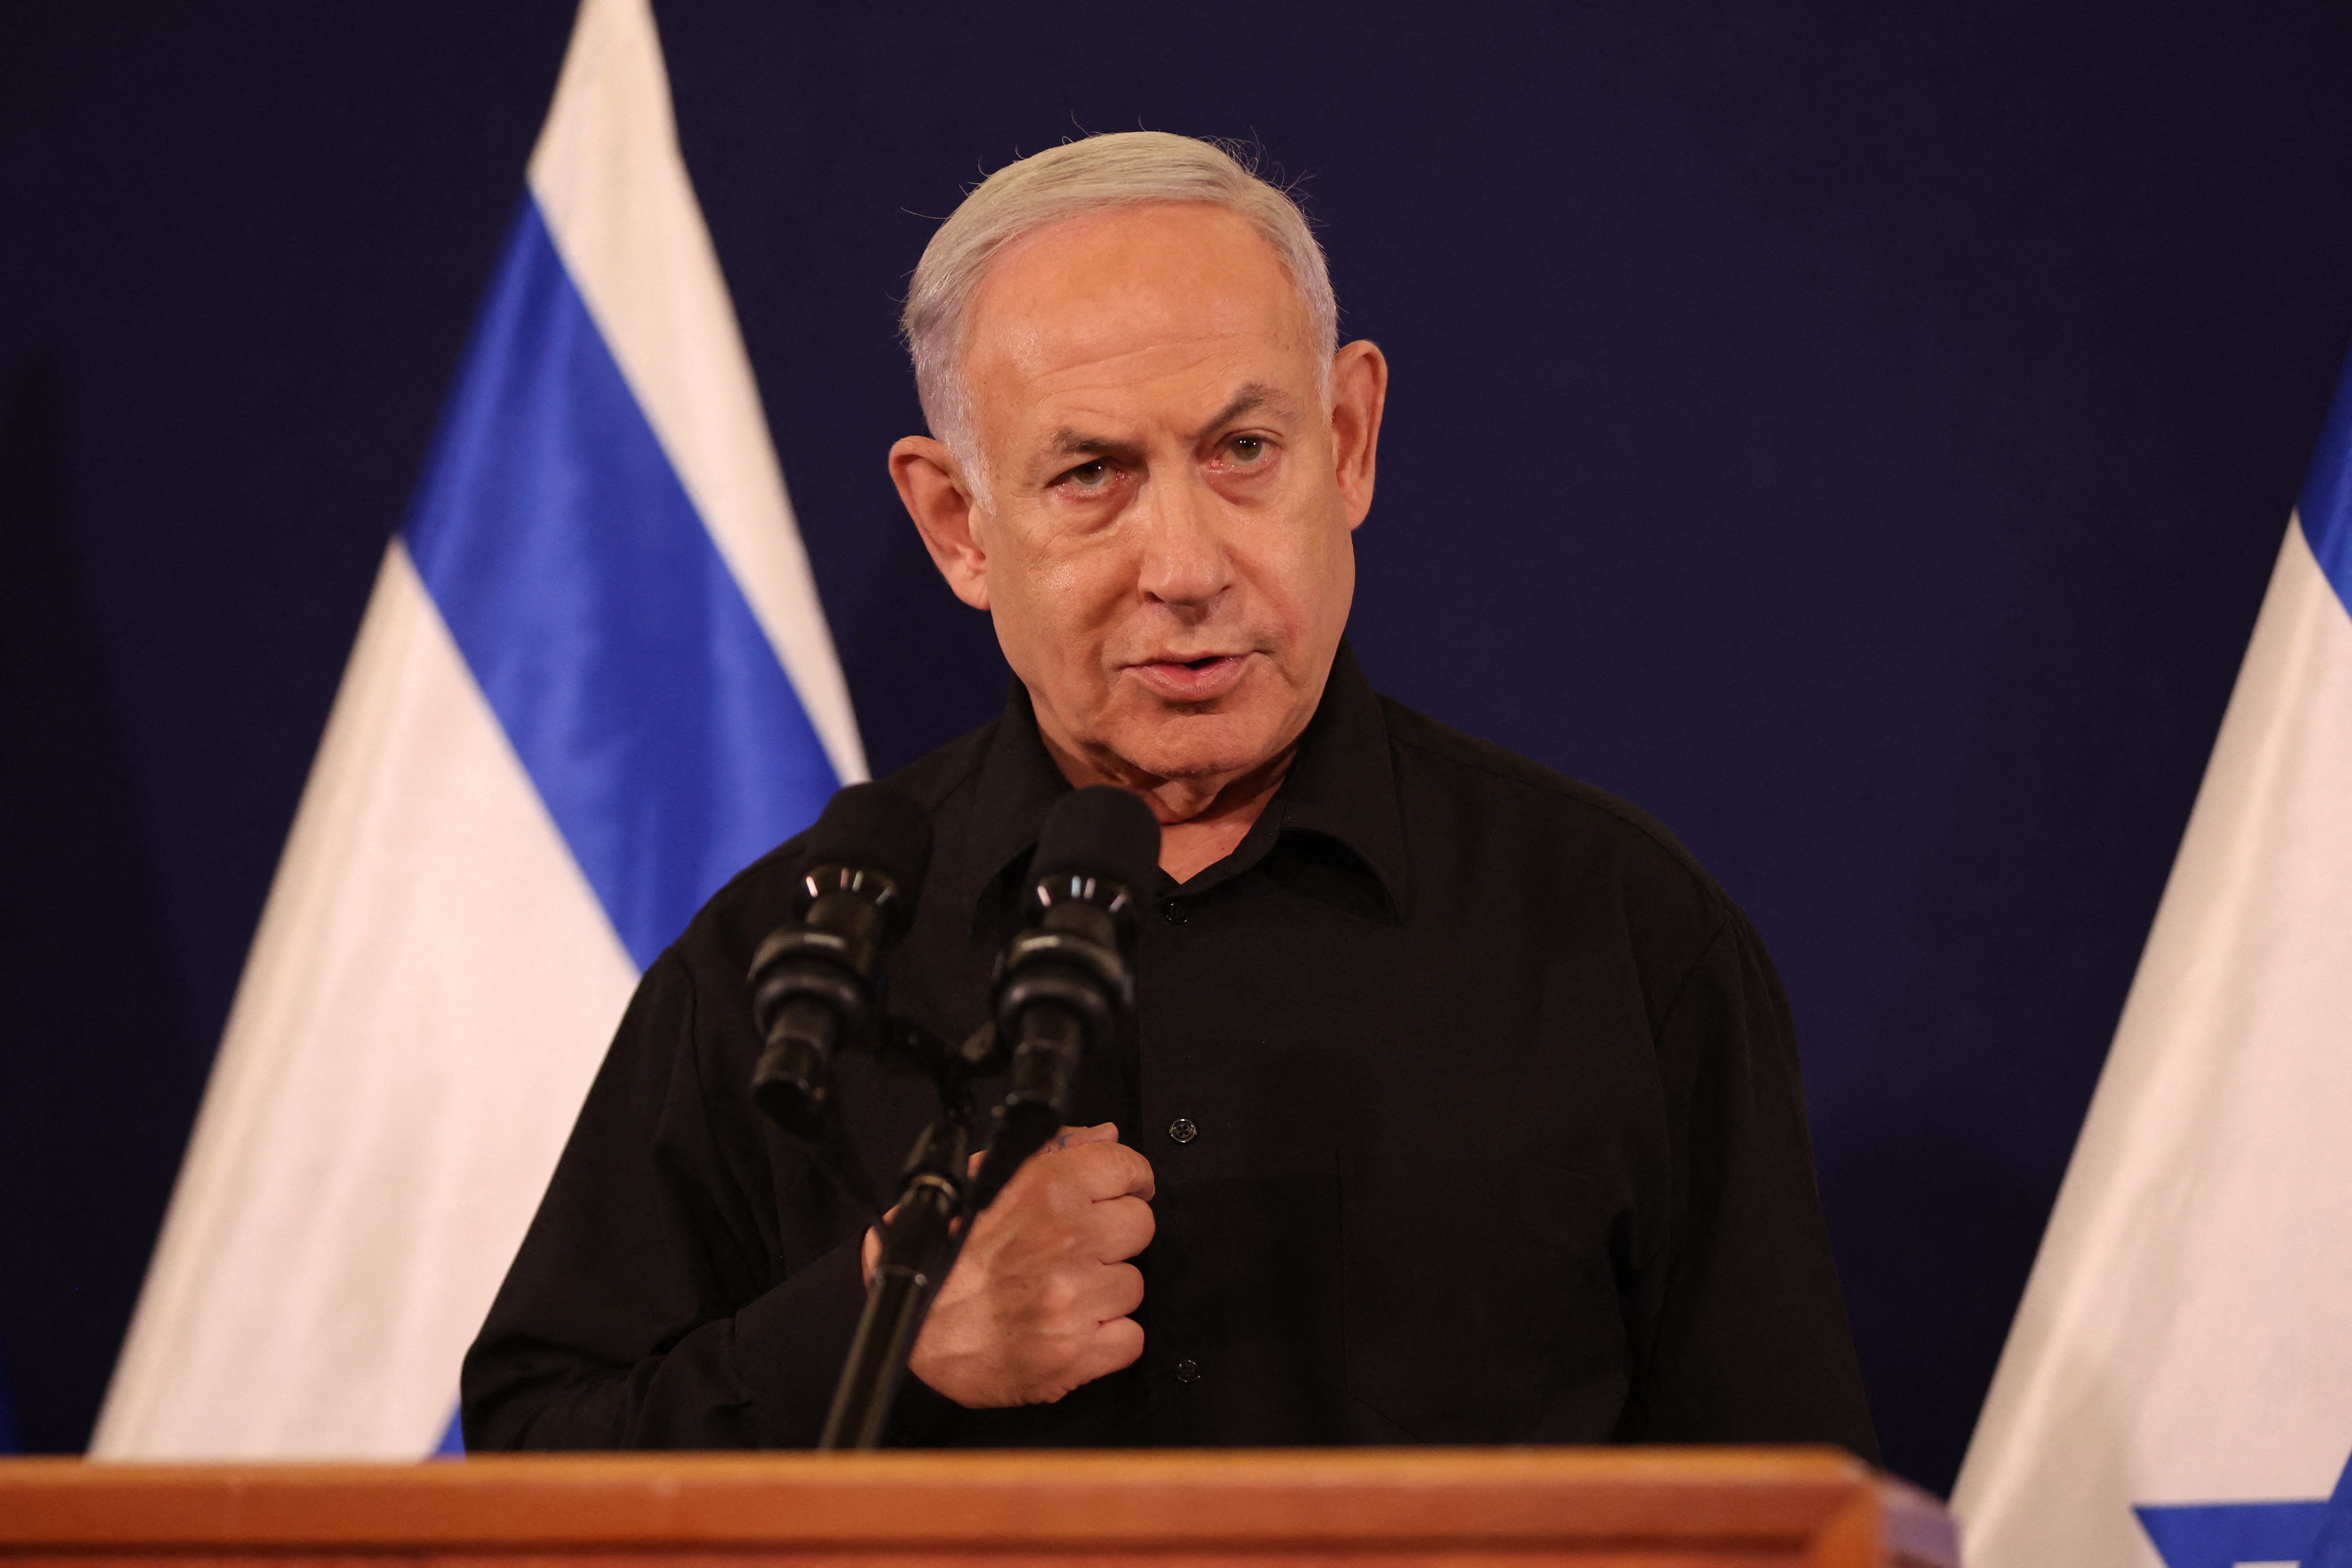 Angriff der Hamas - Netanjahu weist Vorwurf persönlicher Versäumnisse zurück